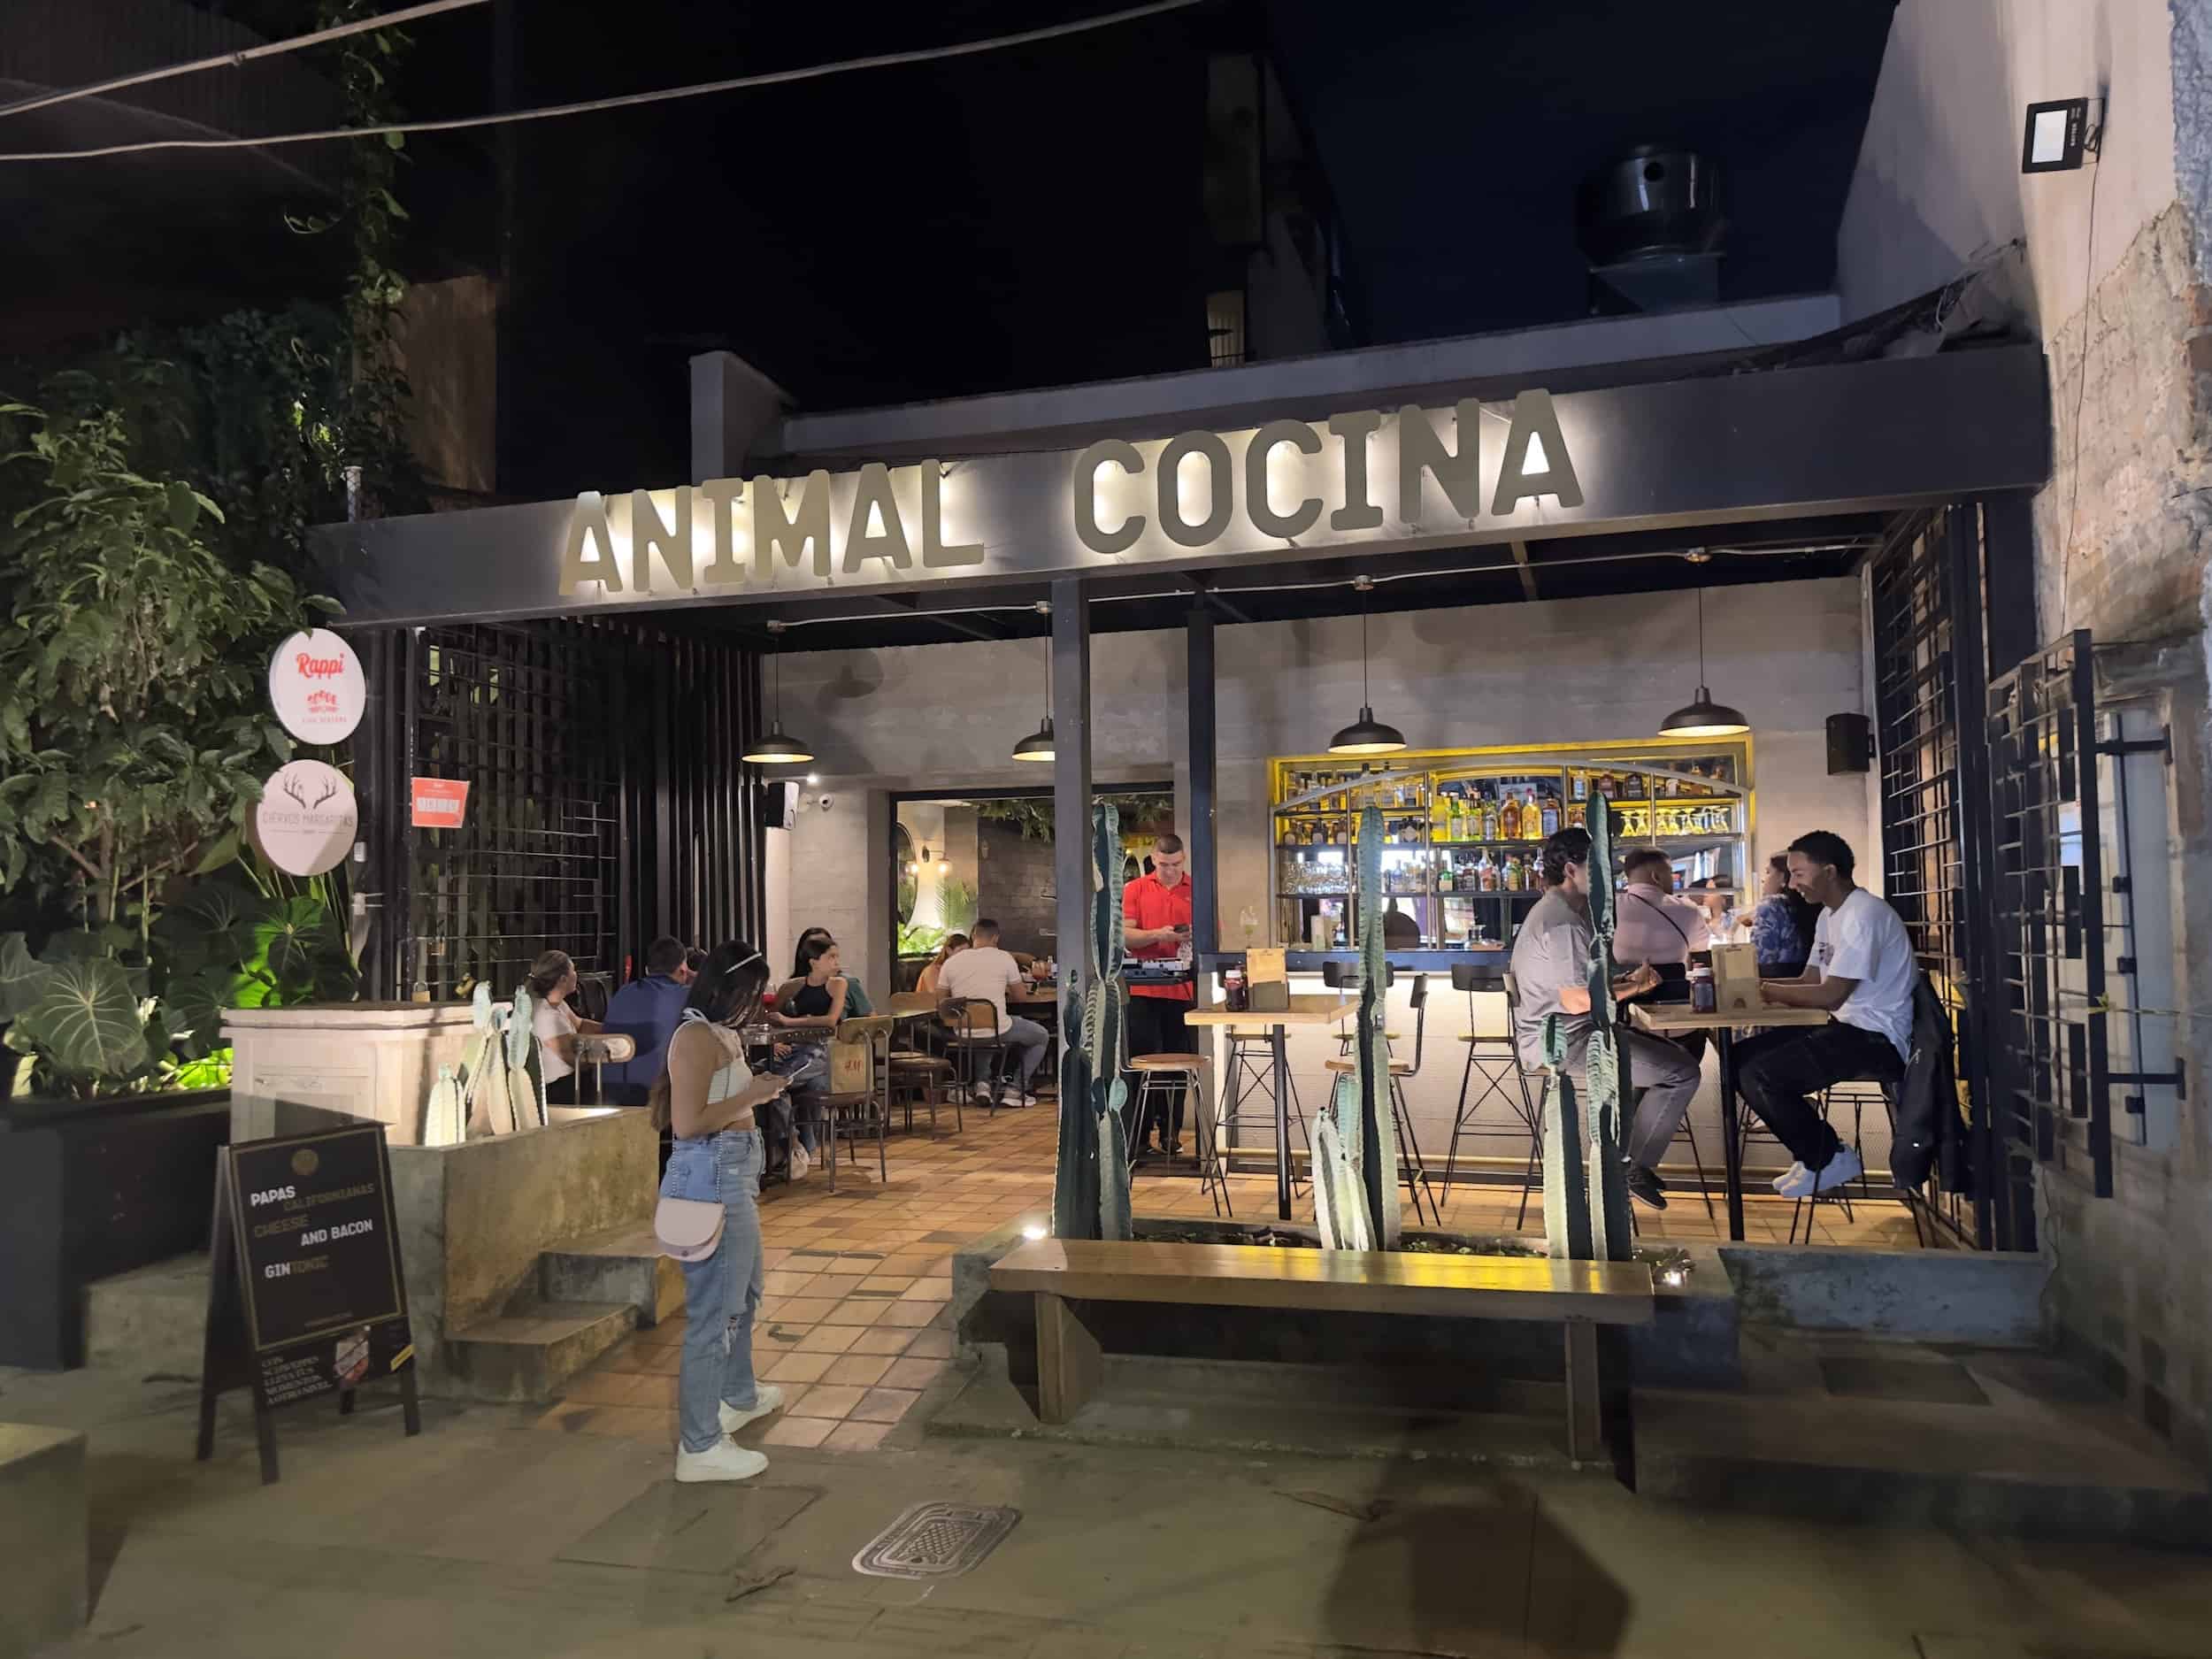 Animal Cocina in Provenza, Medellín, Colombia